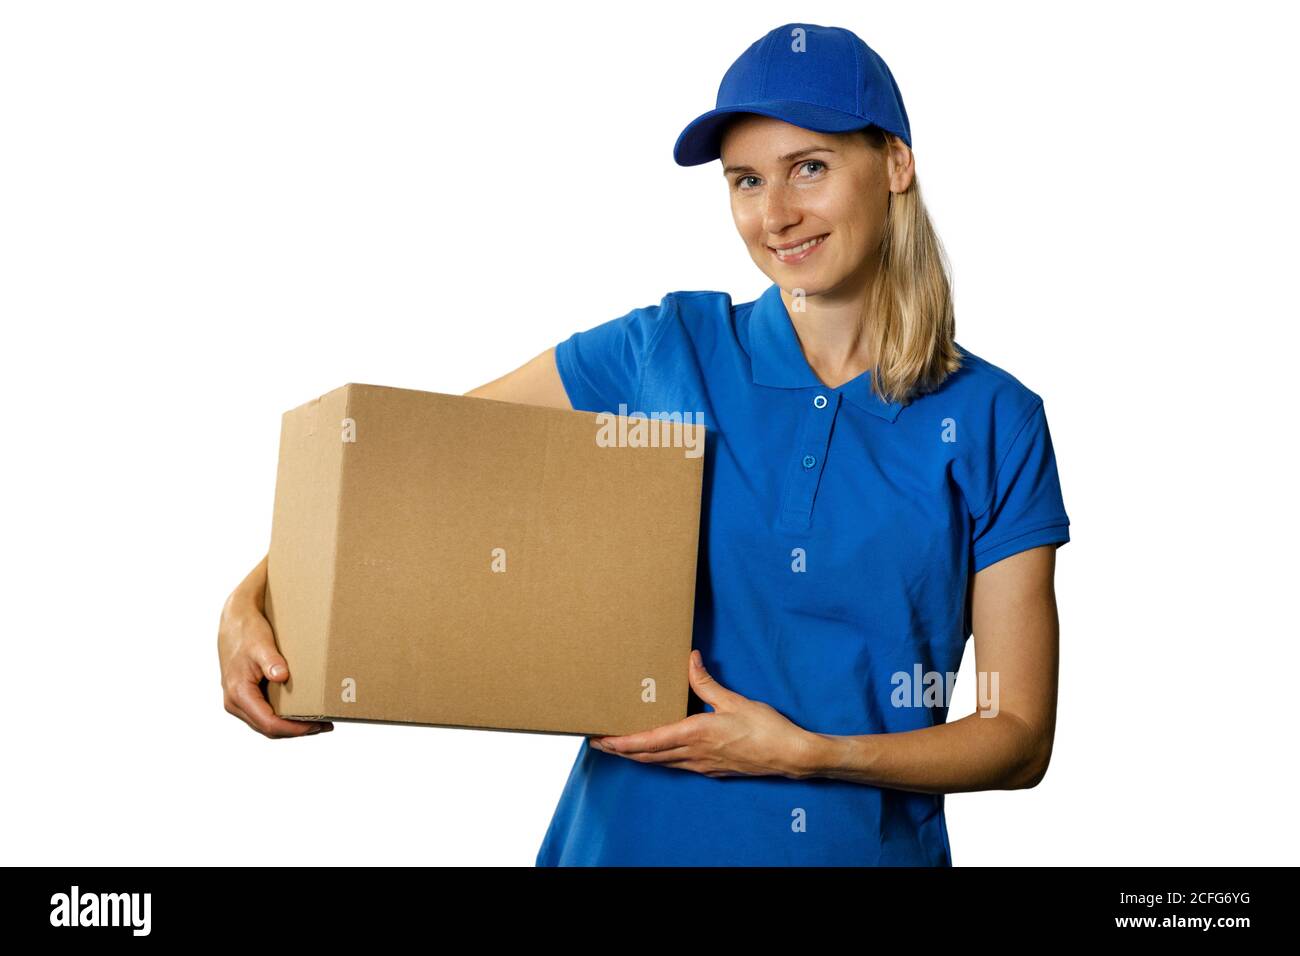 Lieferung Frau in blauen Uniform halten Karton. Isoliert auf weißem Hintergrund Stockfoto